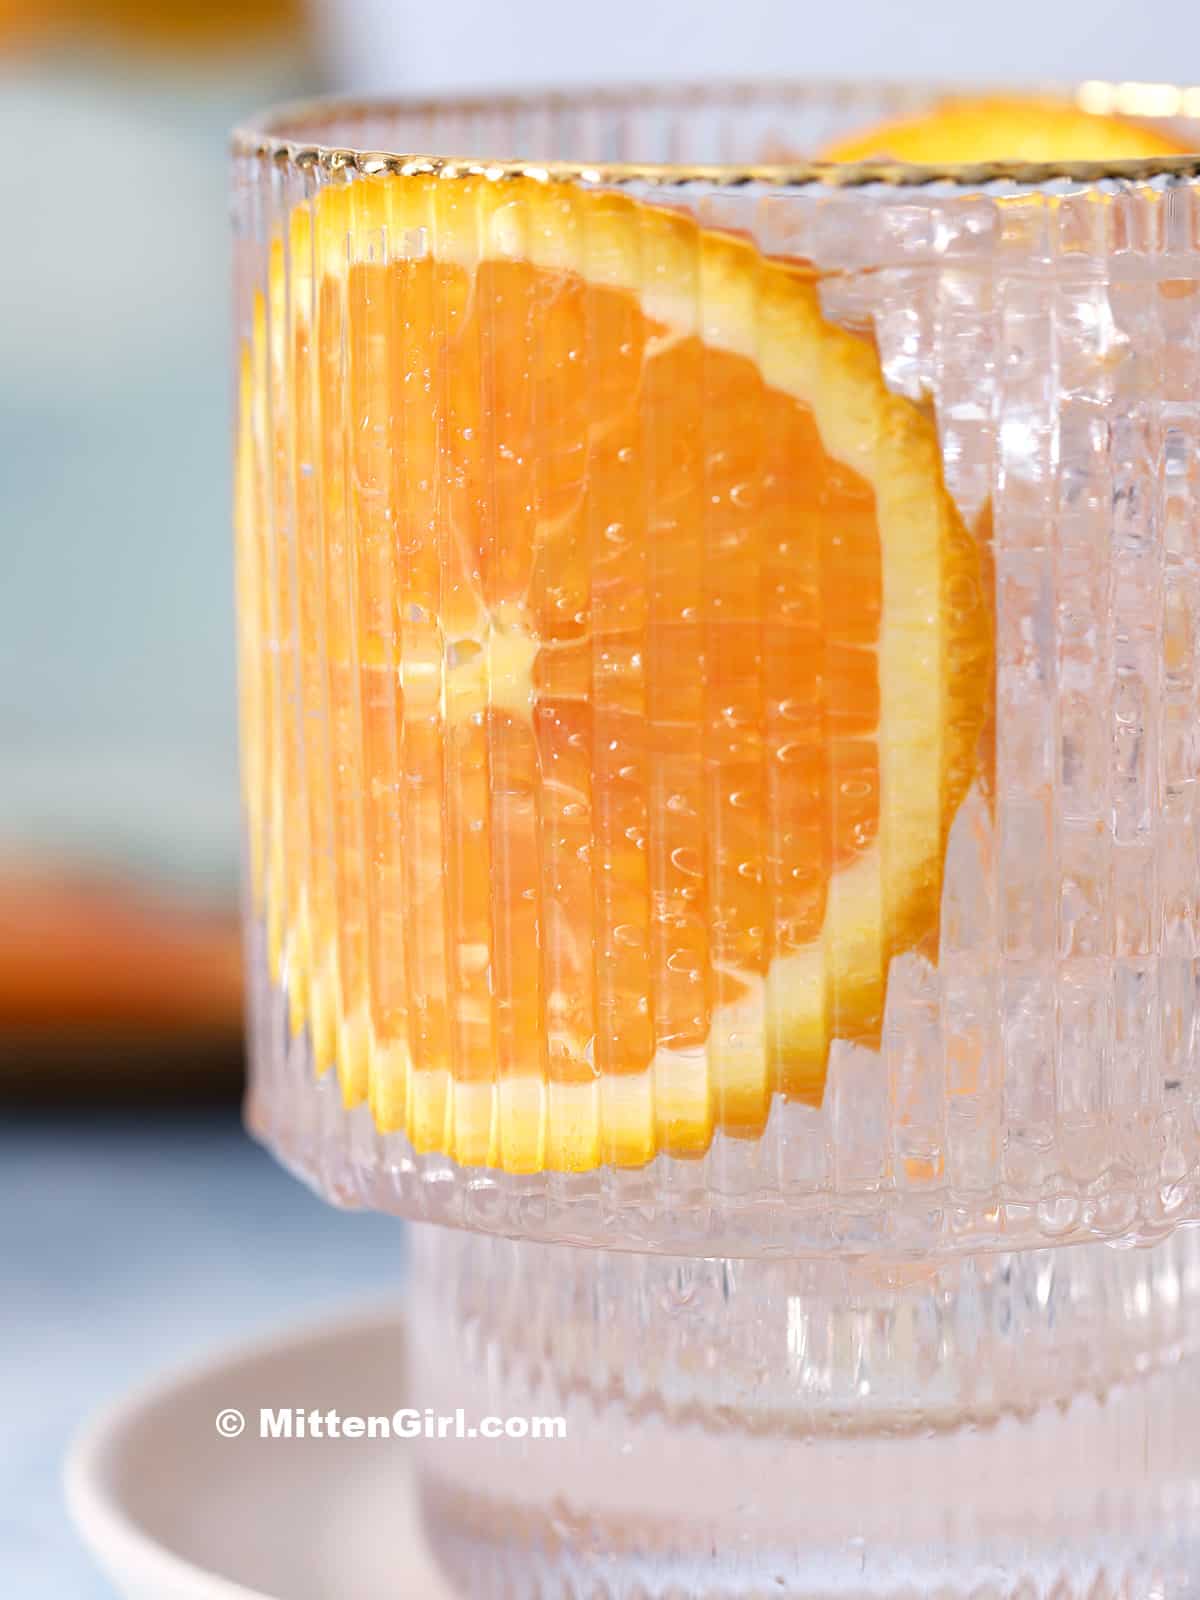 A glass of homemade orange soda.